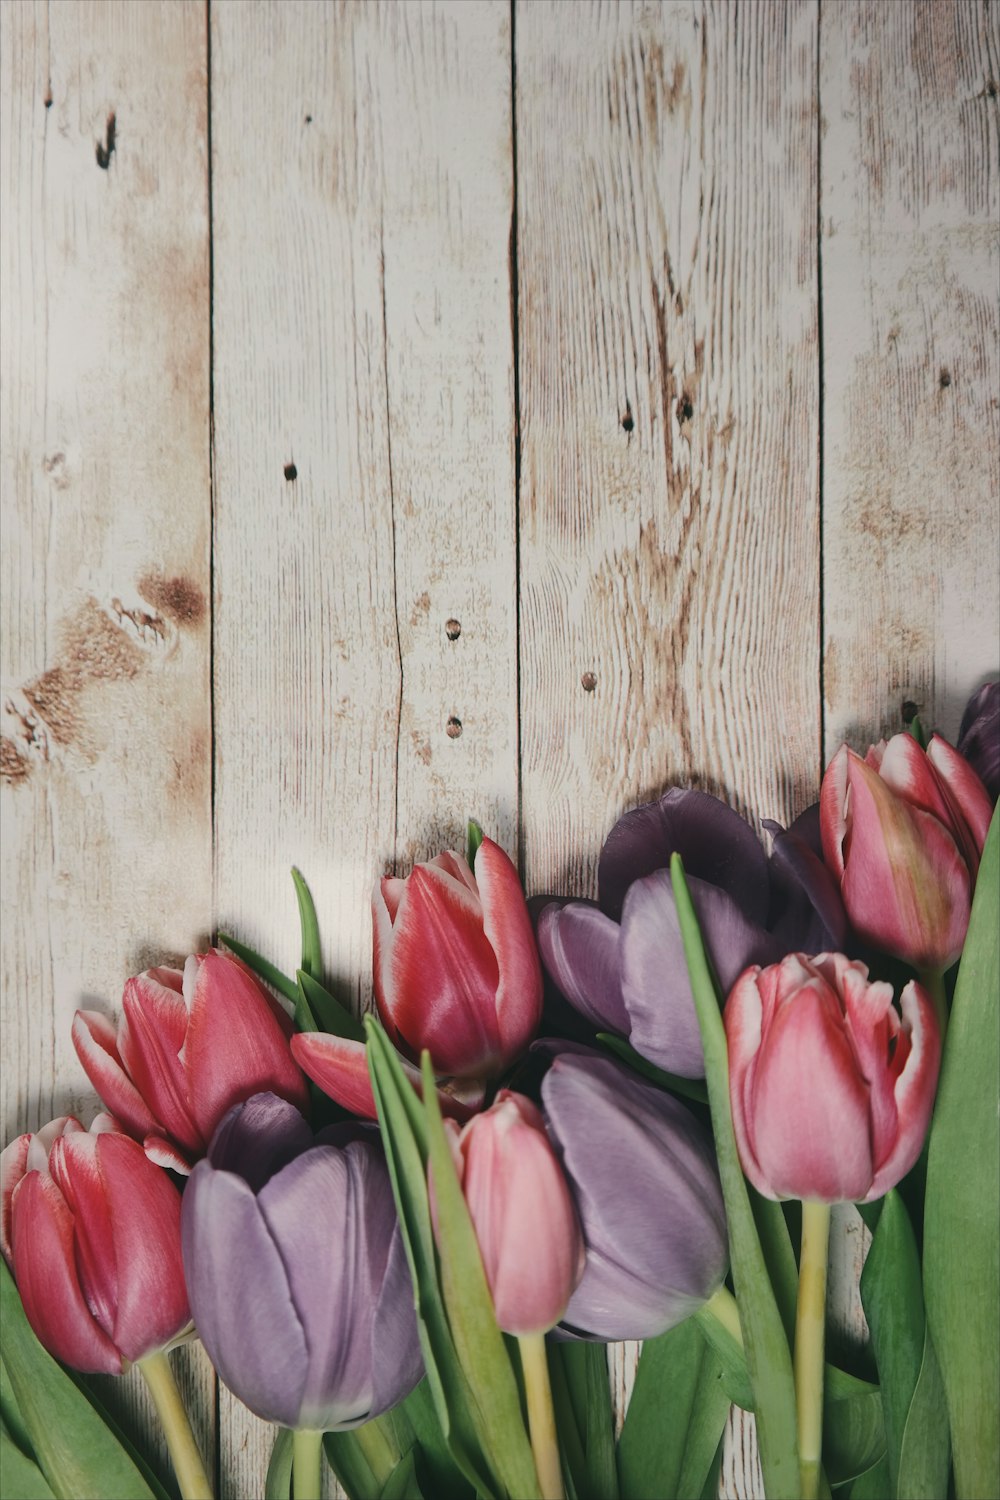 Macro toma de tulipanes rosas en una cubierta de madera.